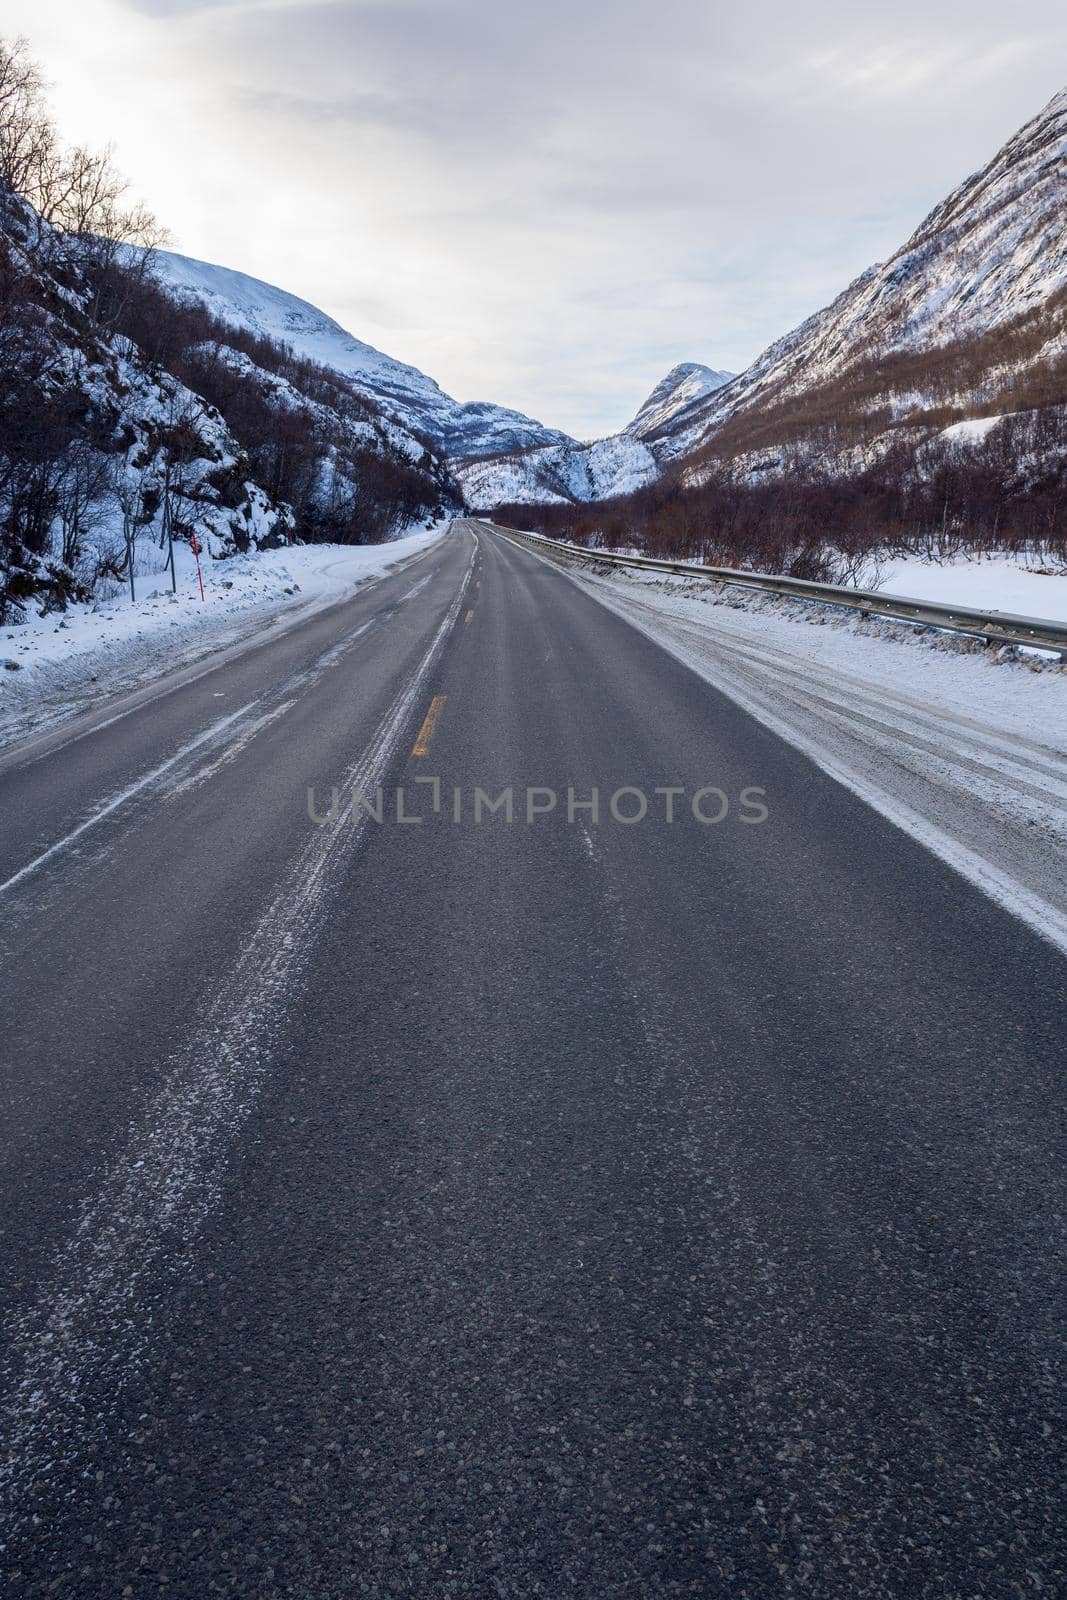 Frozen Road, Norway by bildgigant